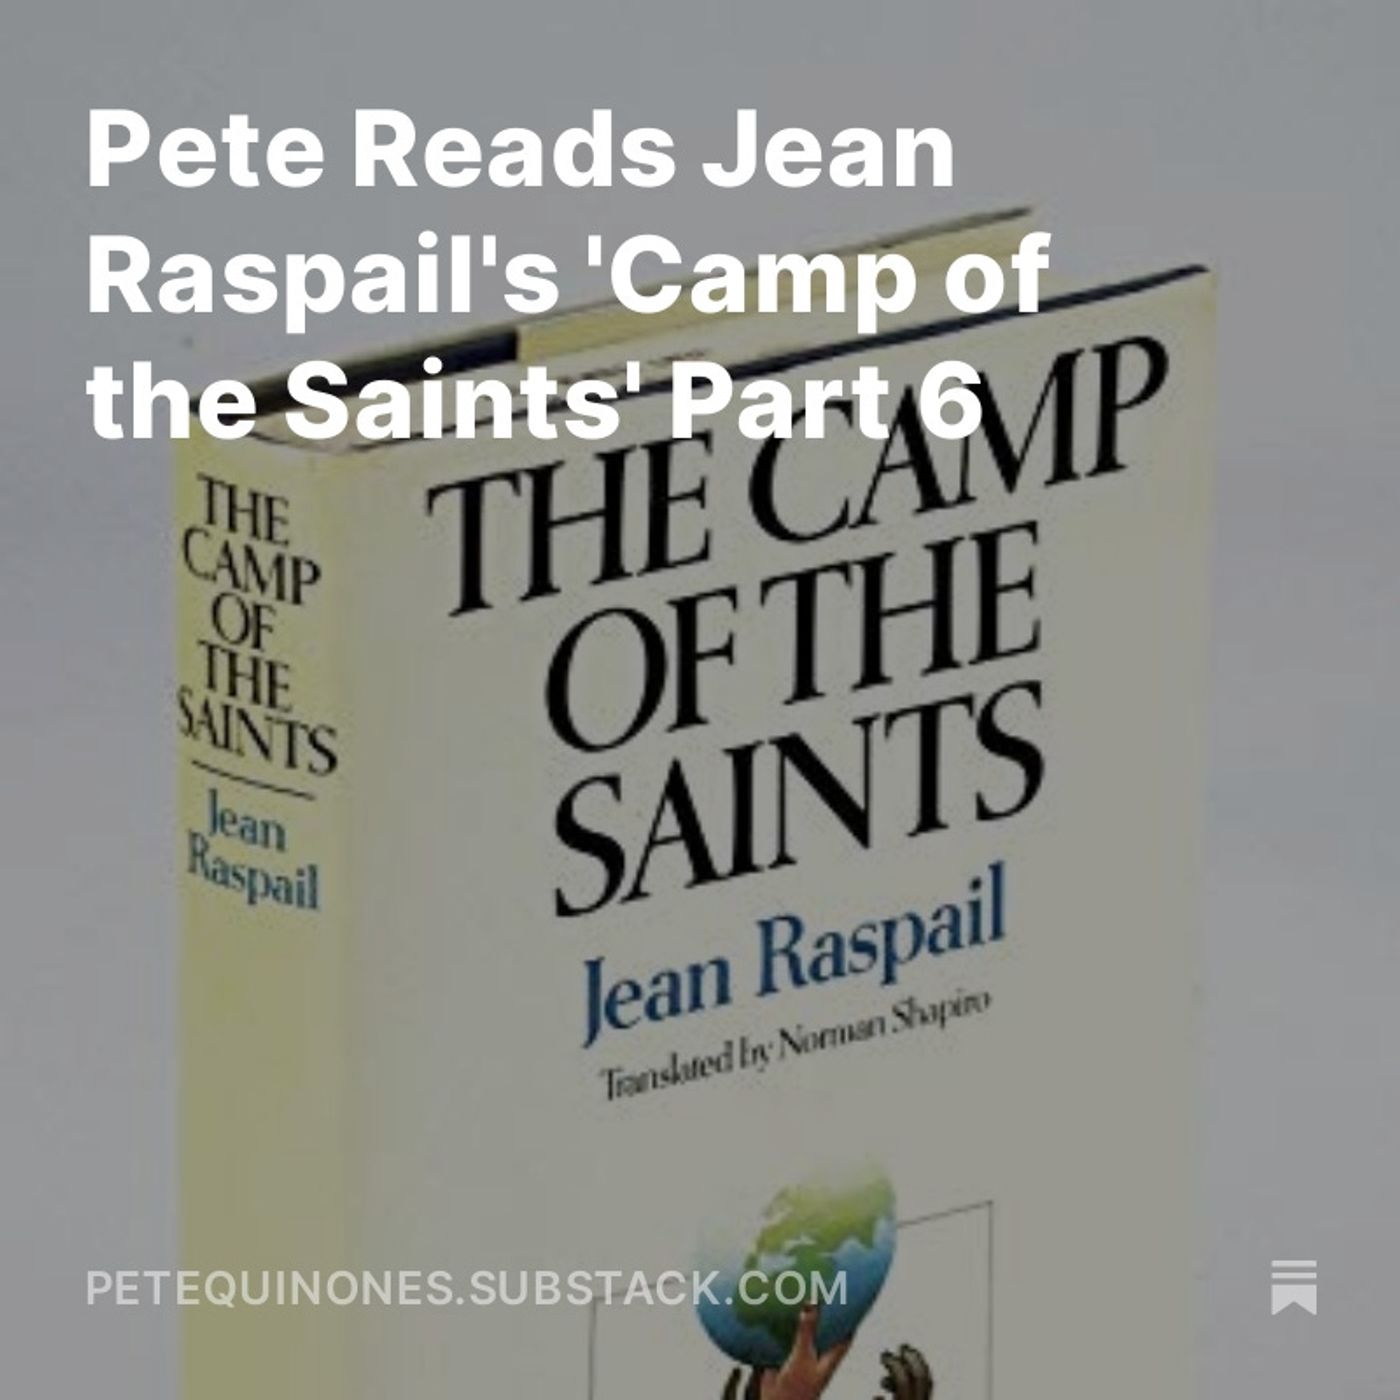 Pete Reads Jean Raspail’s ’Camp of the Saints’ Part 6